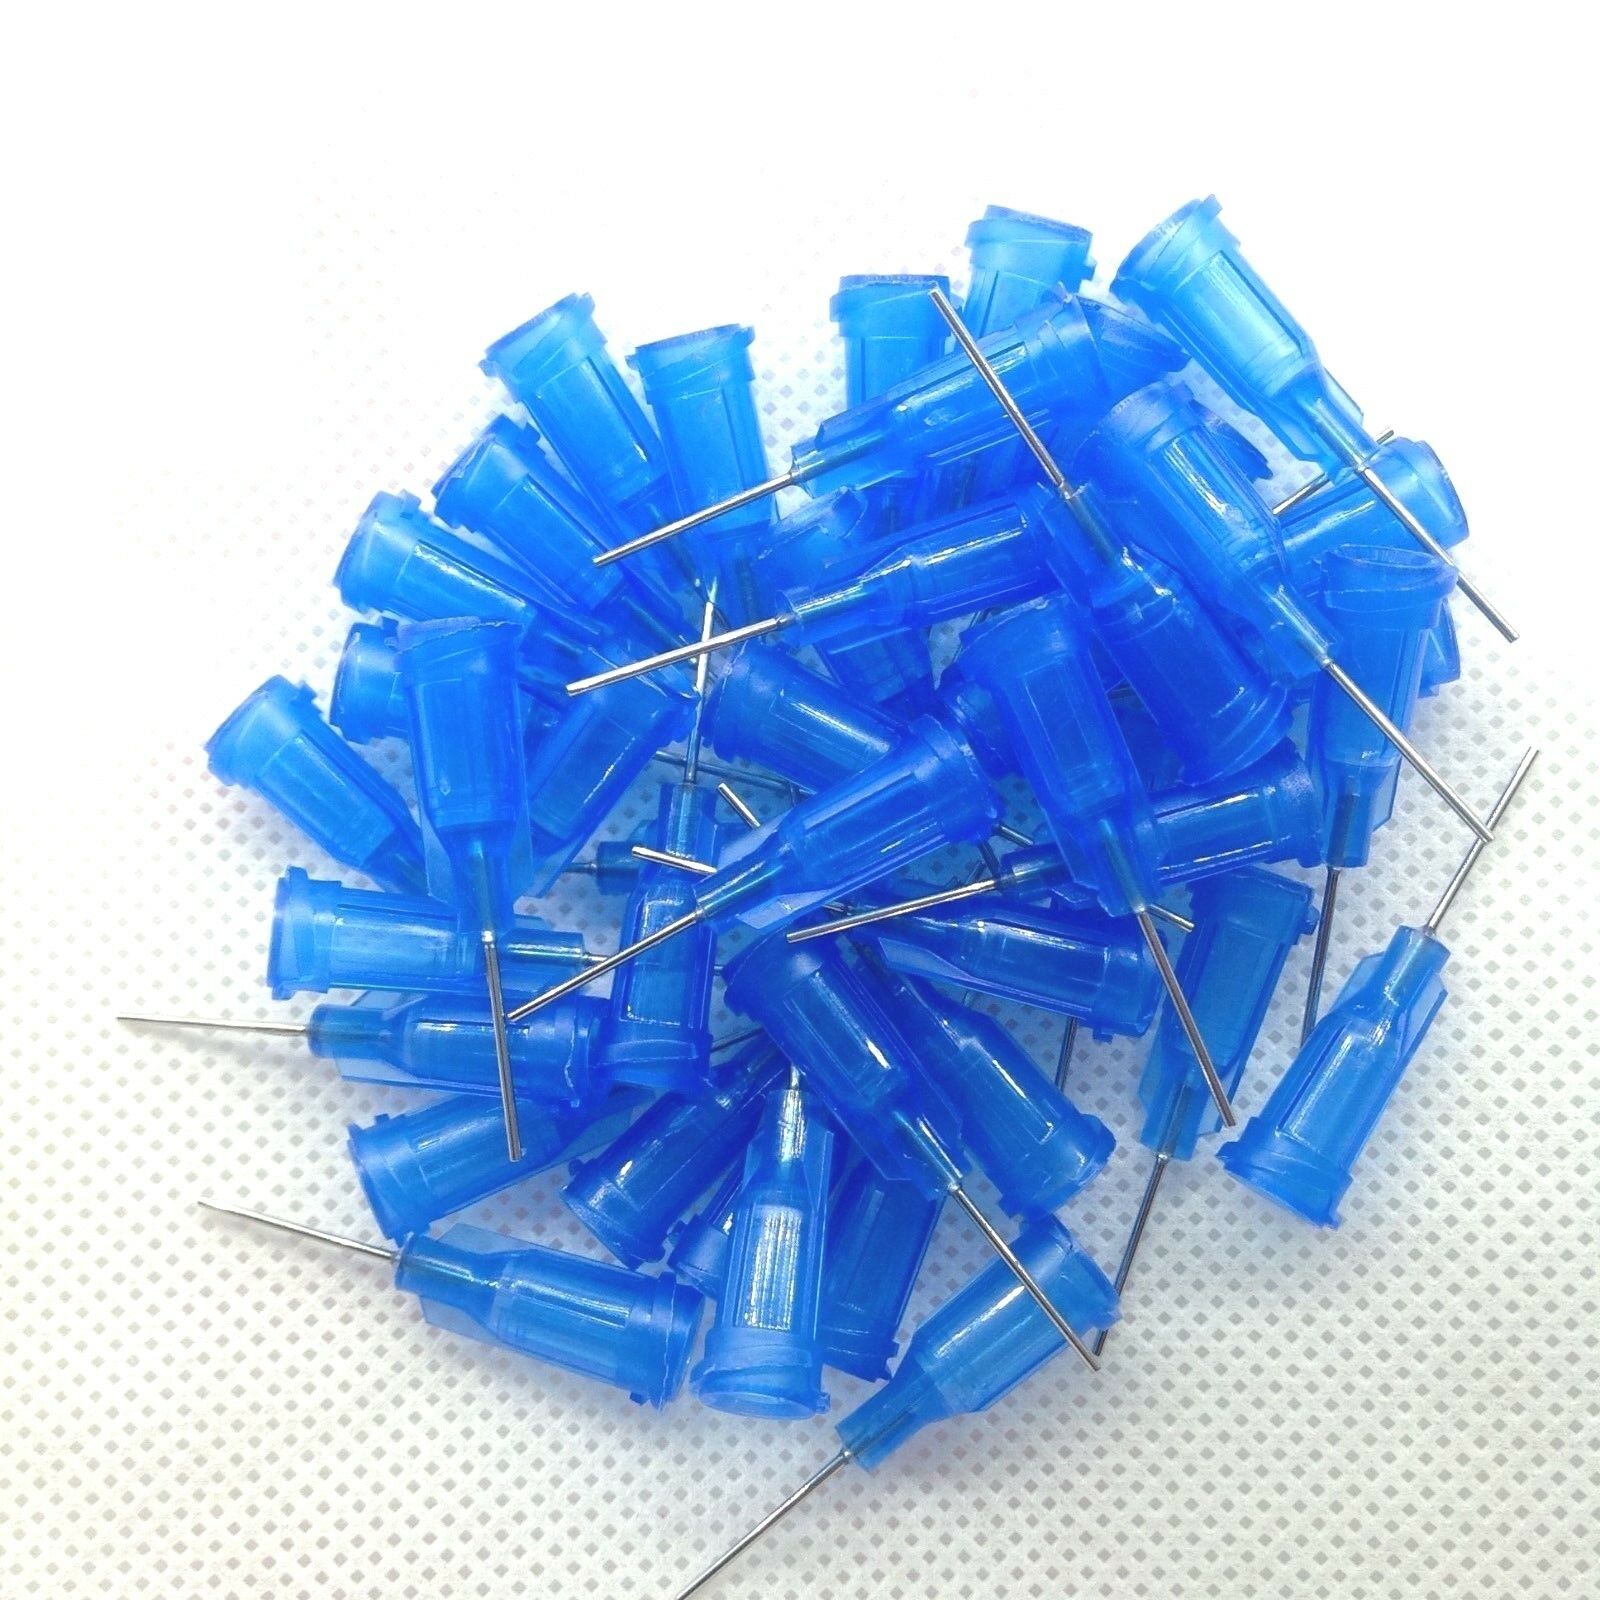 50pcs 1/2" 22Ga Dispensing Needle Tip For Liquid Dispenser Adhesive Glue 0.5"